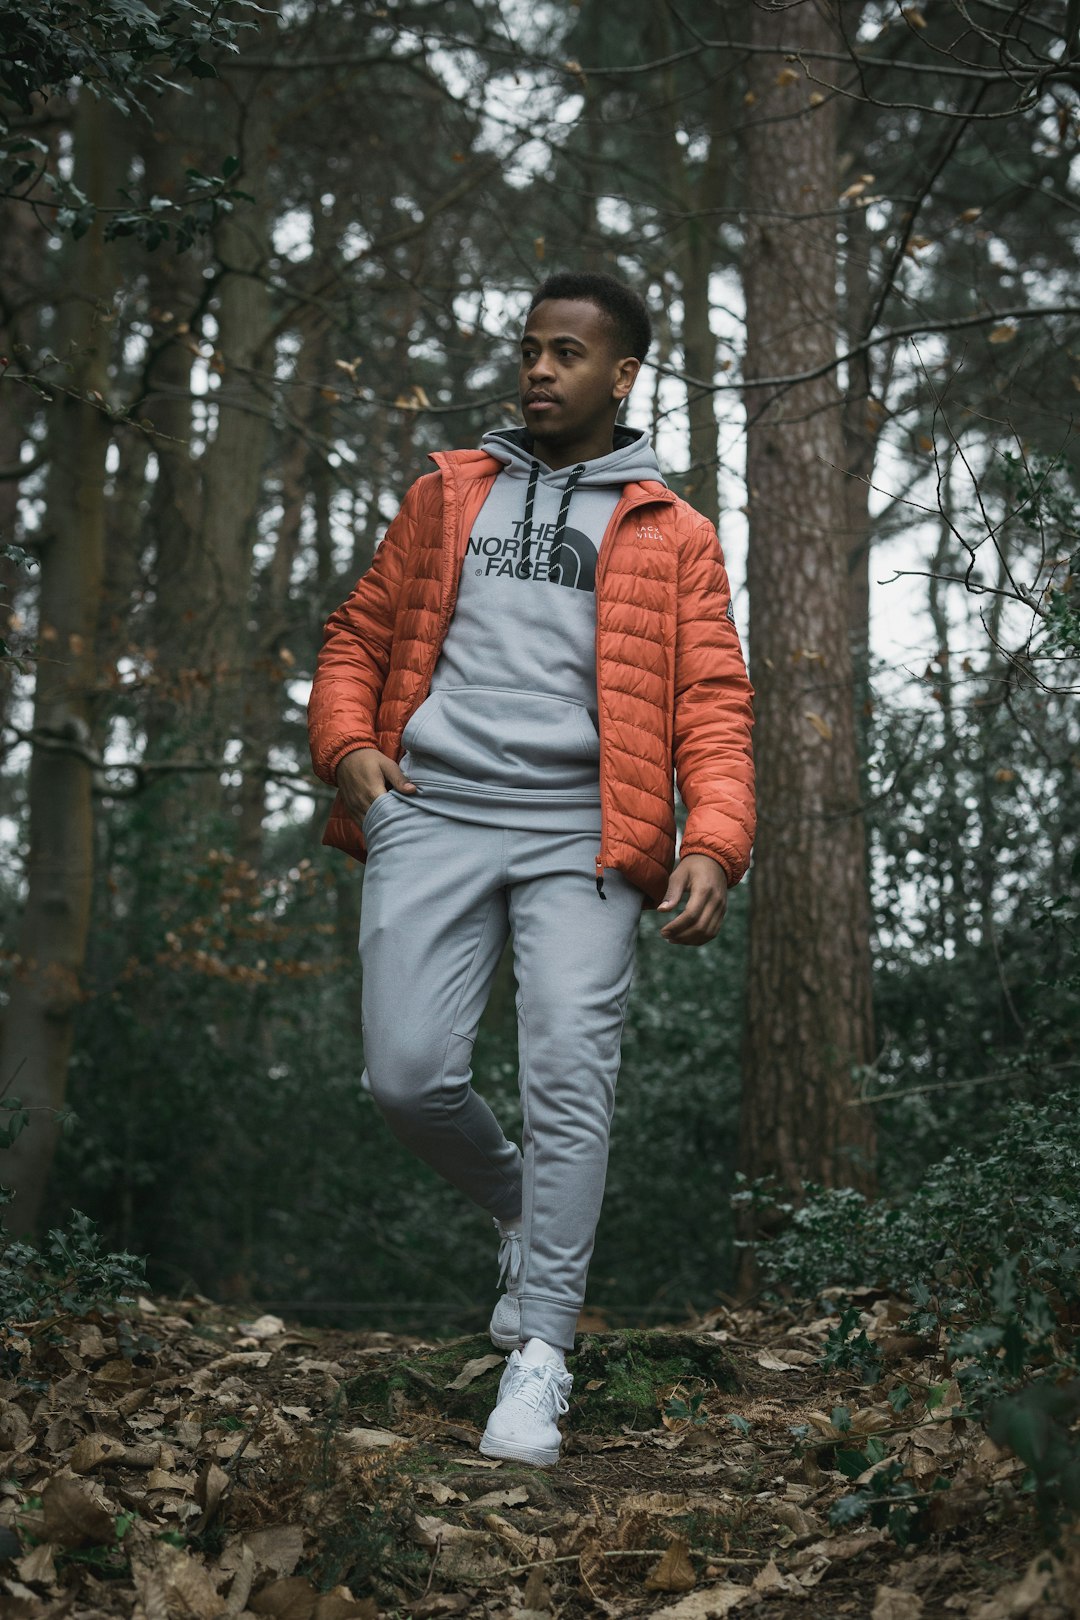 man in orange zip up jacket standing near trees during daytime